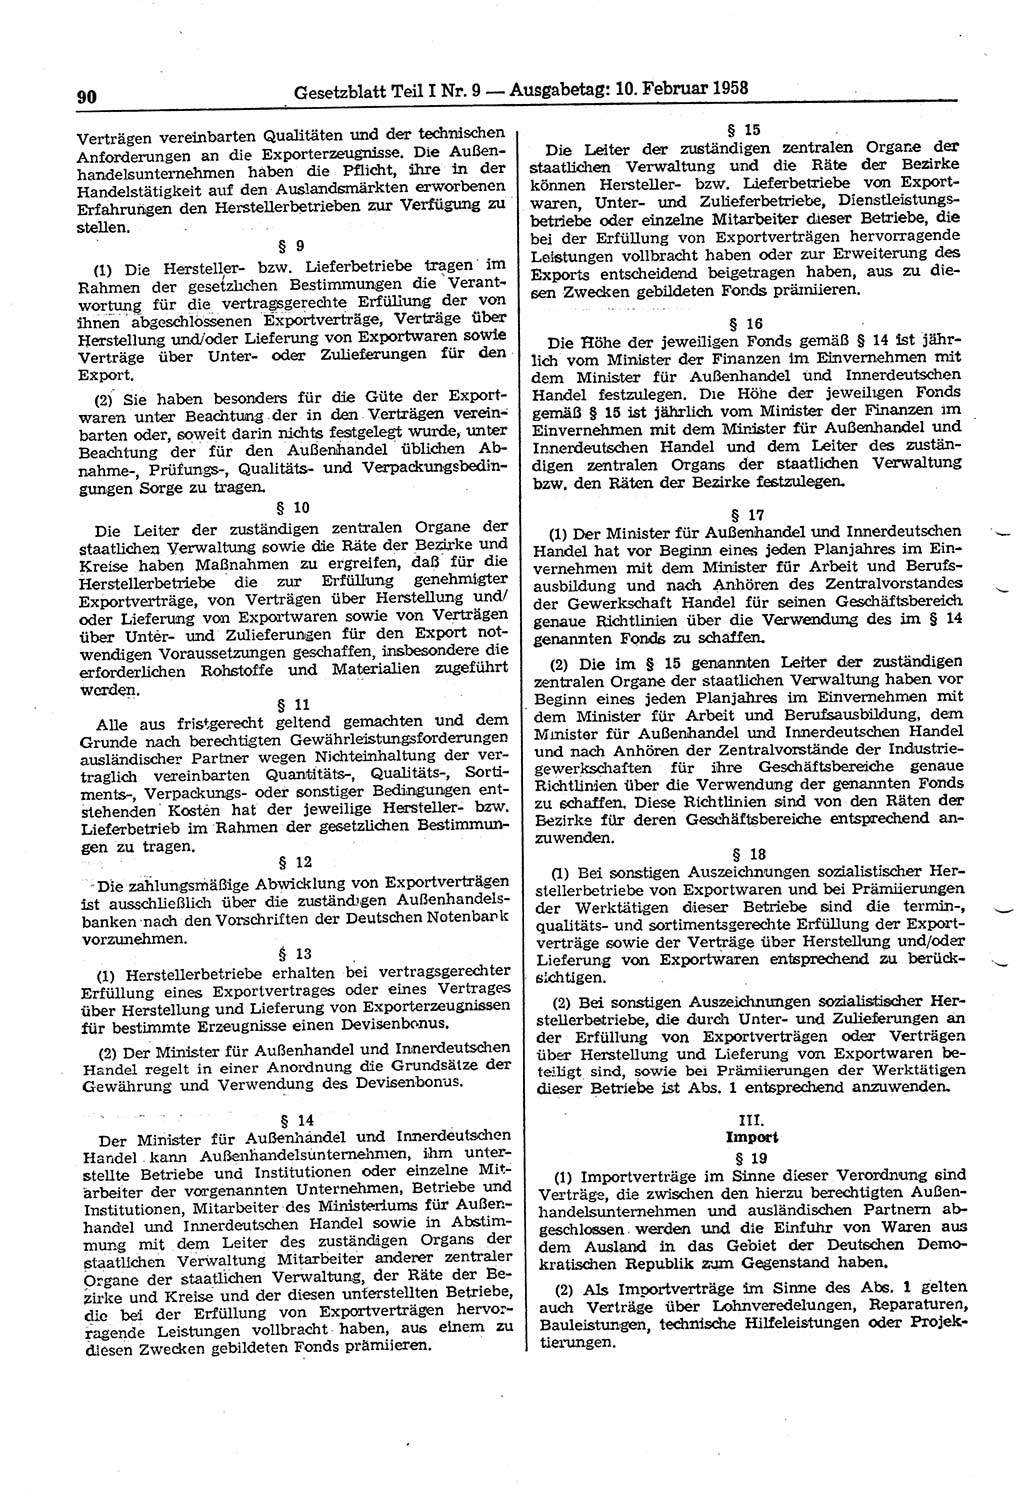 Gesetzblatt (GBl.) der Deutschen Demokratischen Republik (DDR) Teil Ⅰ 1958, Seite 90 (GBl. DDR Ⅰ 1958, S. 90)